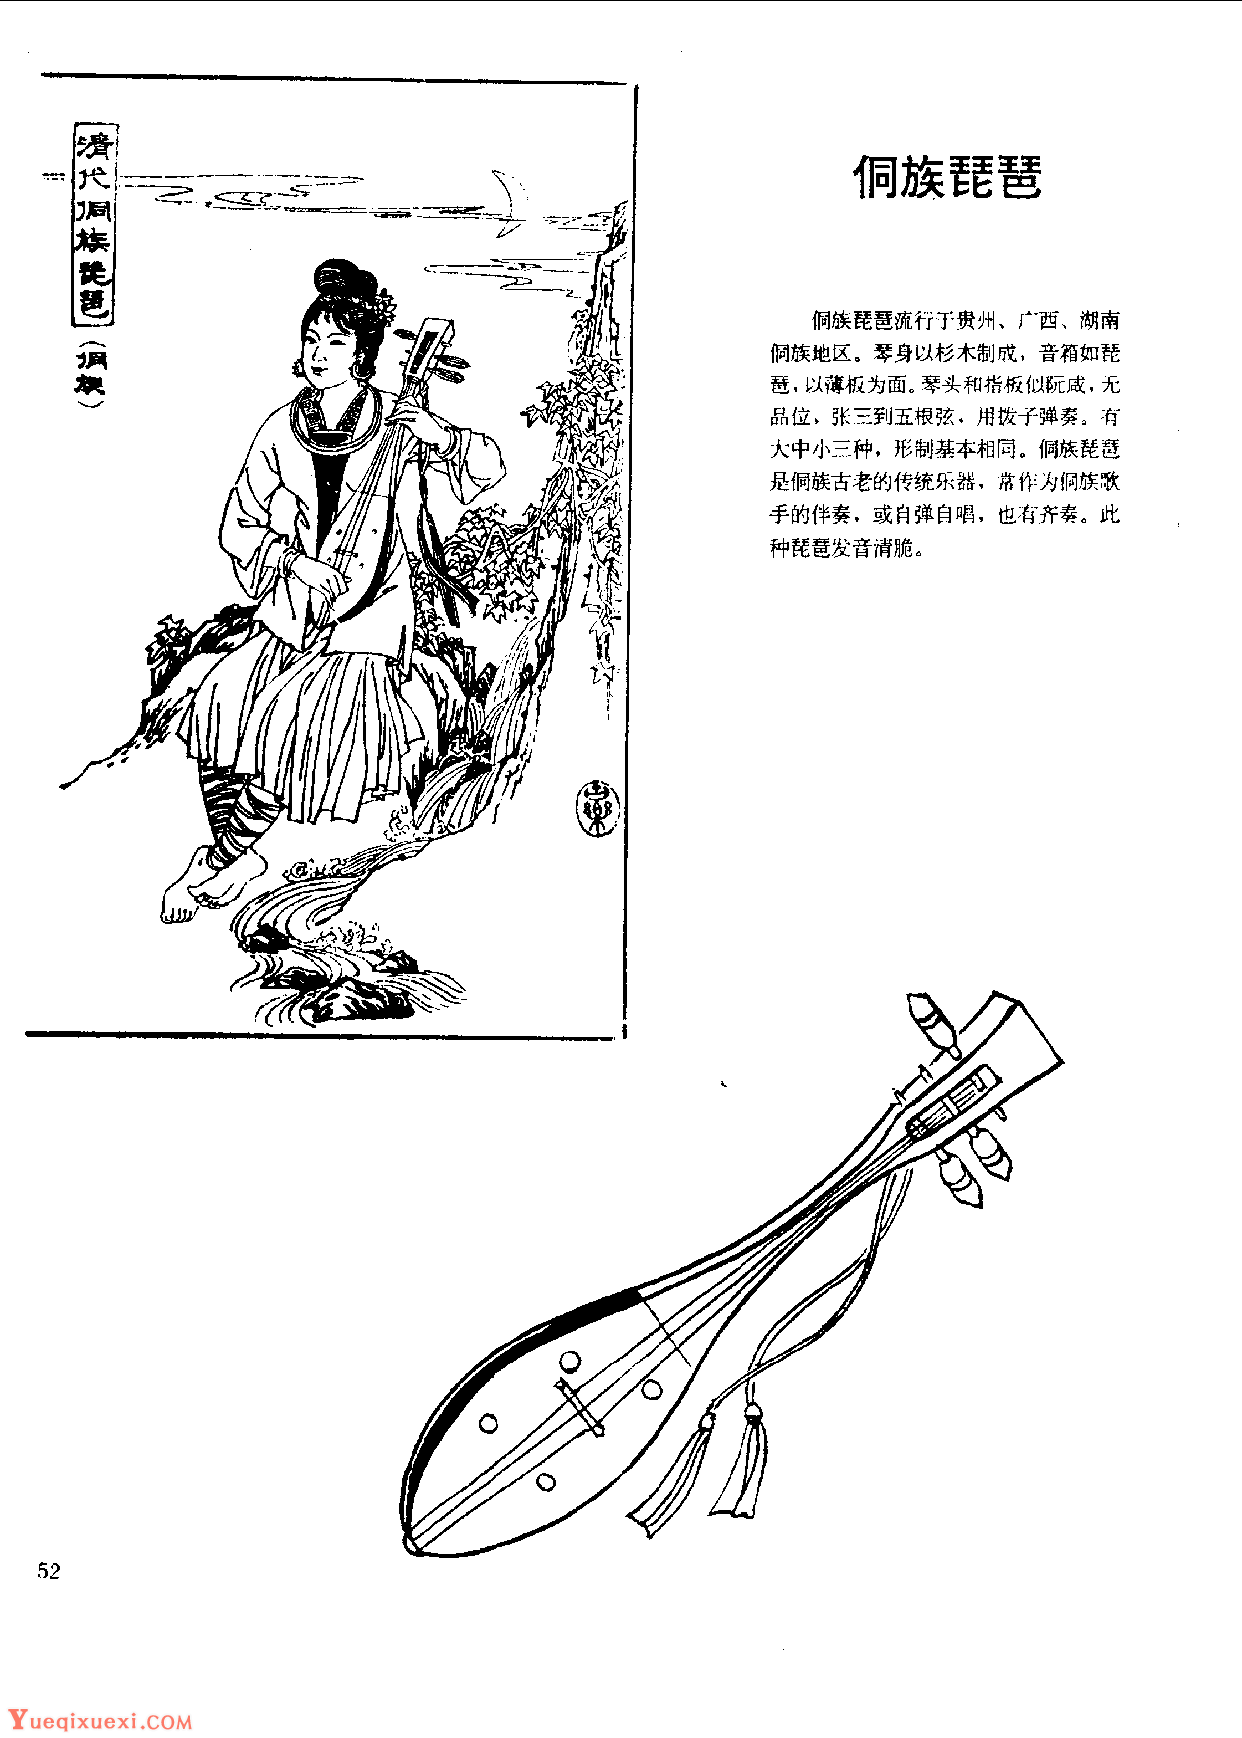 中国古代乐器《侗族琵琶》